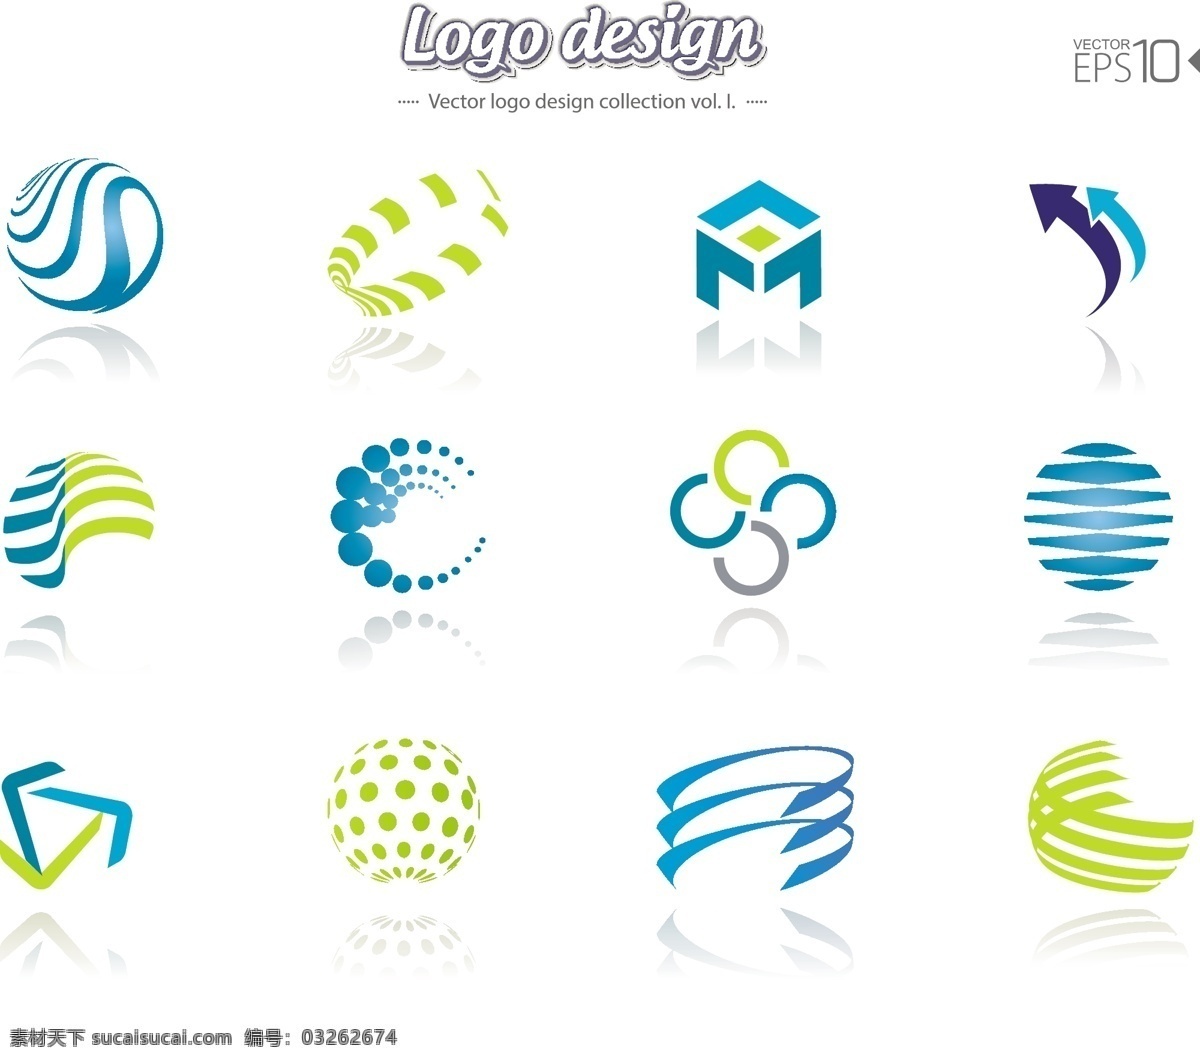 创意 抽象 logo logo设计 创意logo logo图形 标志设计 商标设计 企业logo 公司logo 时尚logo 标志图标 矢量素材 白色